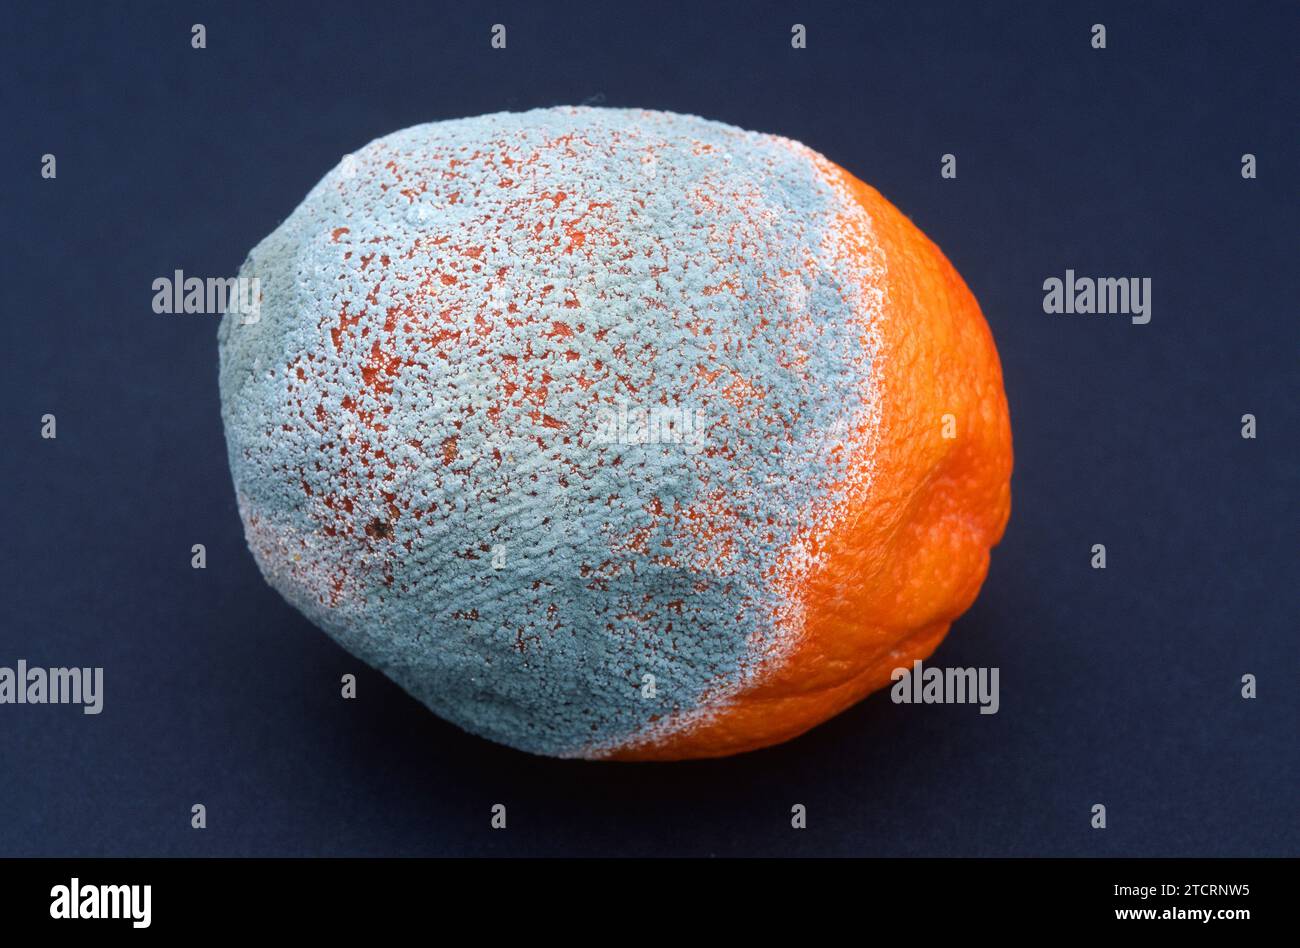 Penicillium italicum colonizing an orange. Stock Photo